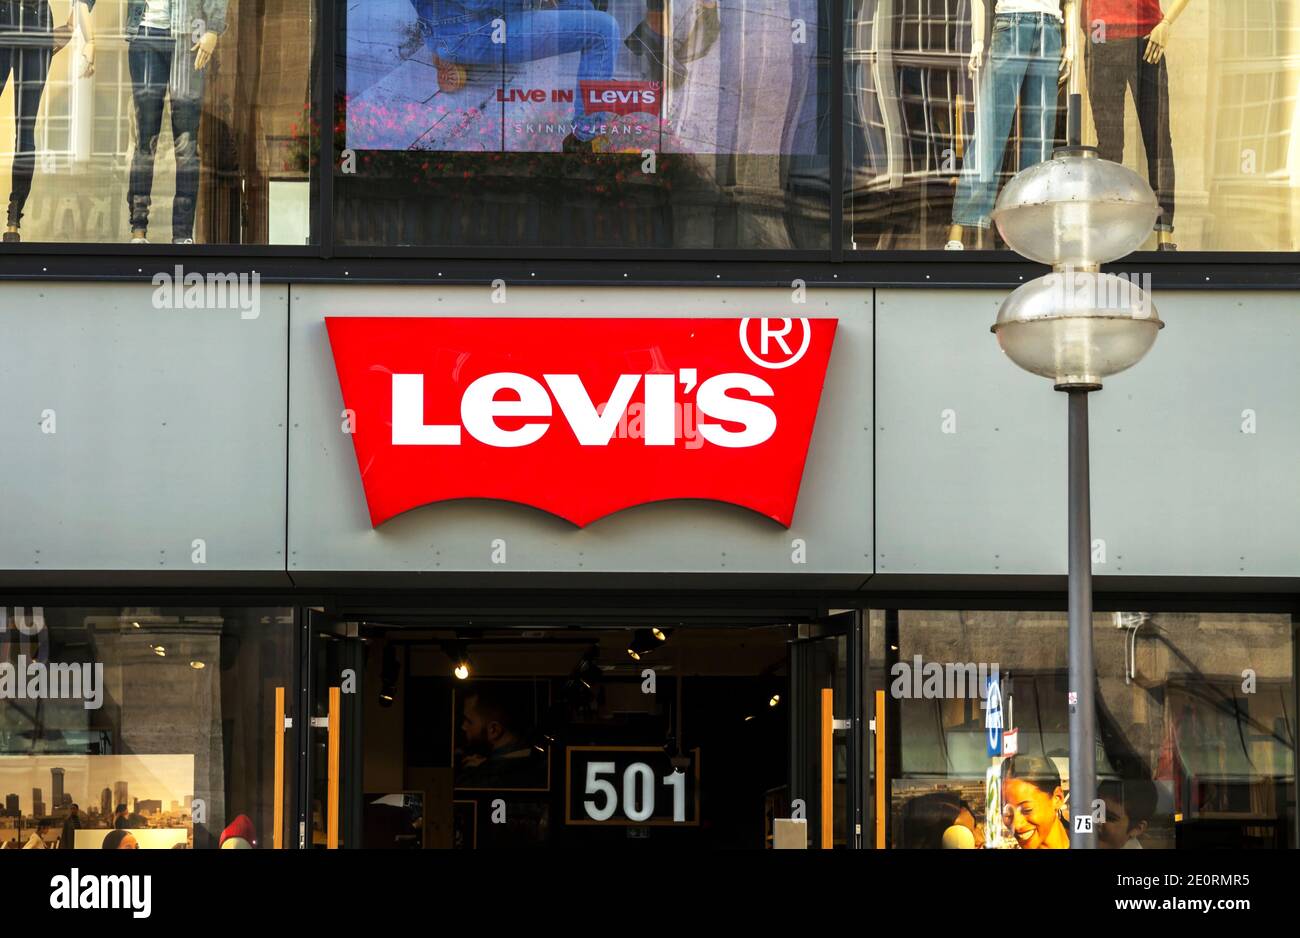 München, Deutschland : Levi's Store, München. Levi Strauss wurde 1853  gegründet und ist ein amerikanisches Bekleidungsunternehmen, das weltweit  für seine Denim-Jeans-Marke bekannt ist Stockfotografie - Alamy